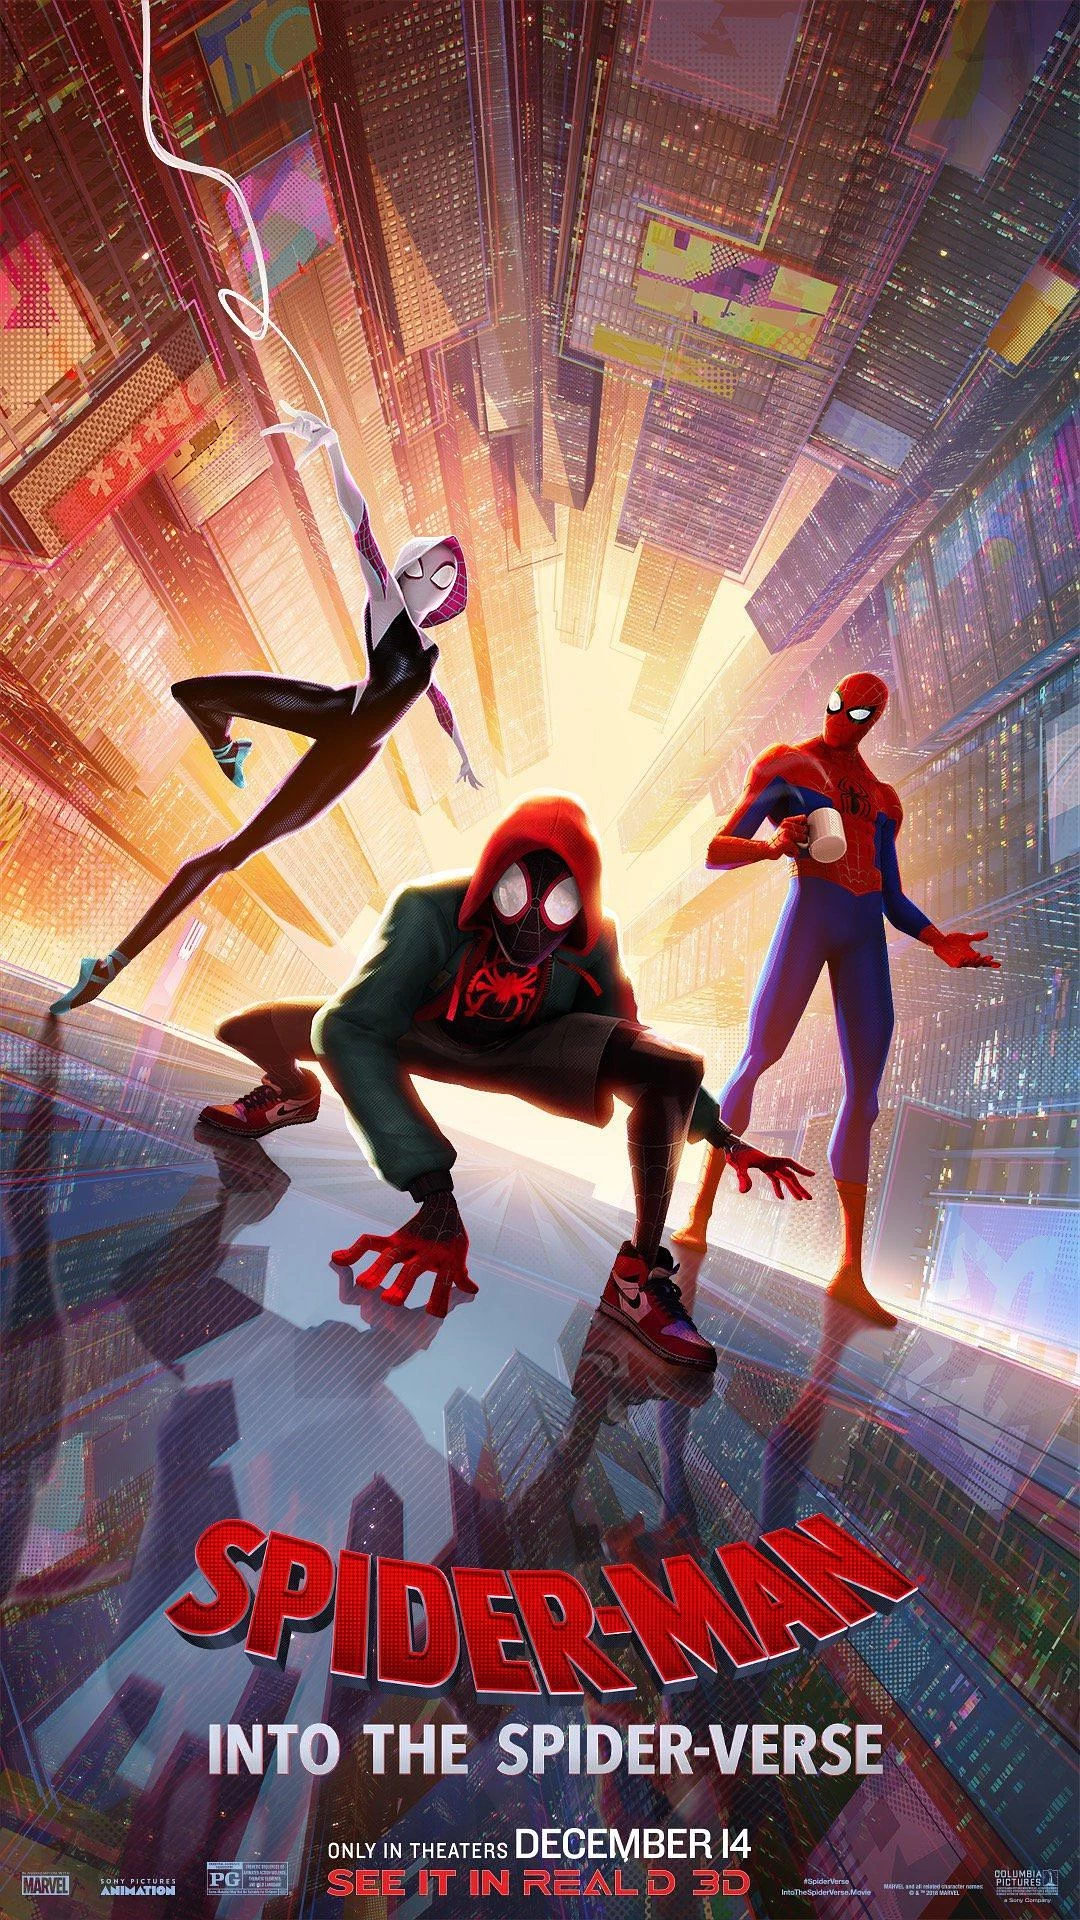 蜘蛛侠：平行宇宙 4K蓝光原盘下载+高清MKV版/ Spider-Man: a New Universe / 蜘蛛人：新宇宙(台) / 蜘蛛侠：平行世界 / 蜘蛛侠：新纪元 / 蜘蛛侠：跳入蜘蛛宇宙(港) 2018 Spider-Man: Into the Spider-Verse 47.1G